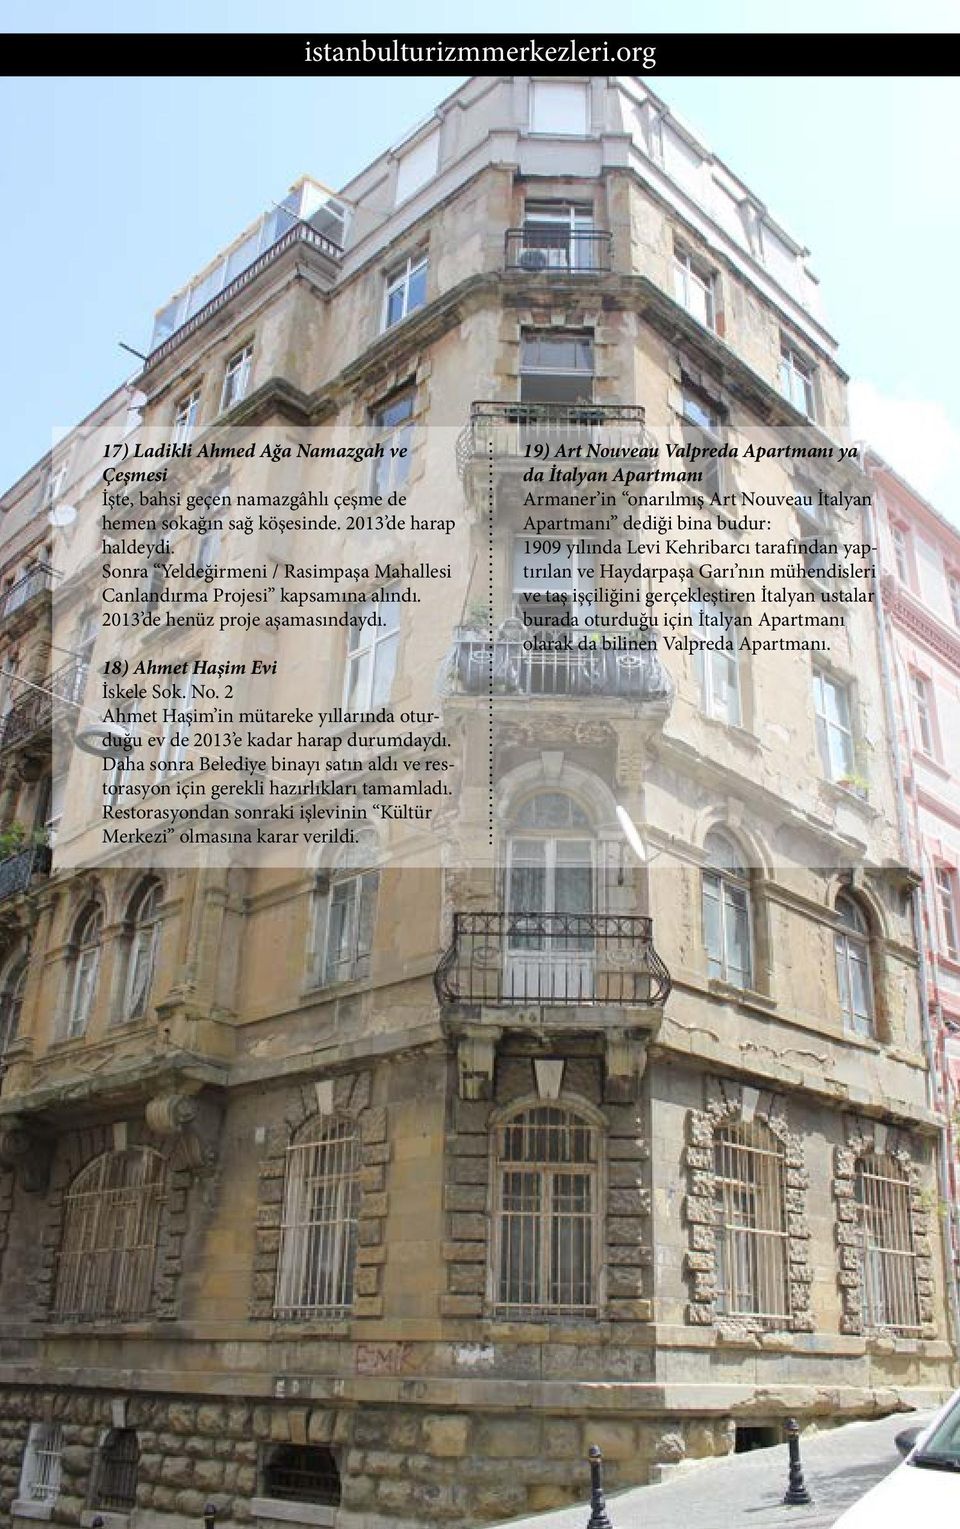 2 Ahmet Haşim in mütareke yıllarında oturduğu ev de 2013 e kadar harap durumdaydı. Daha sonra Belediye binayı satın aldı ve restorasyon için gerekli hazırlıkları tamamladı.